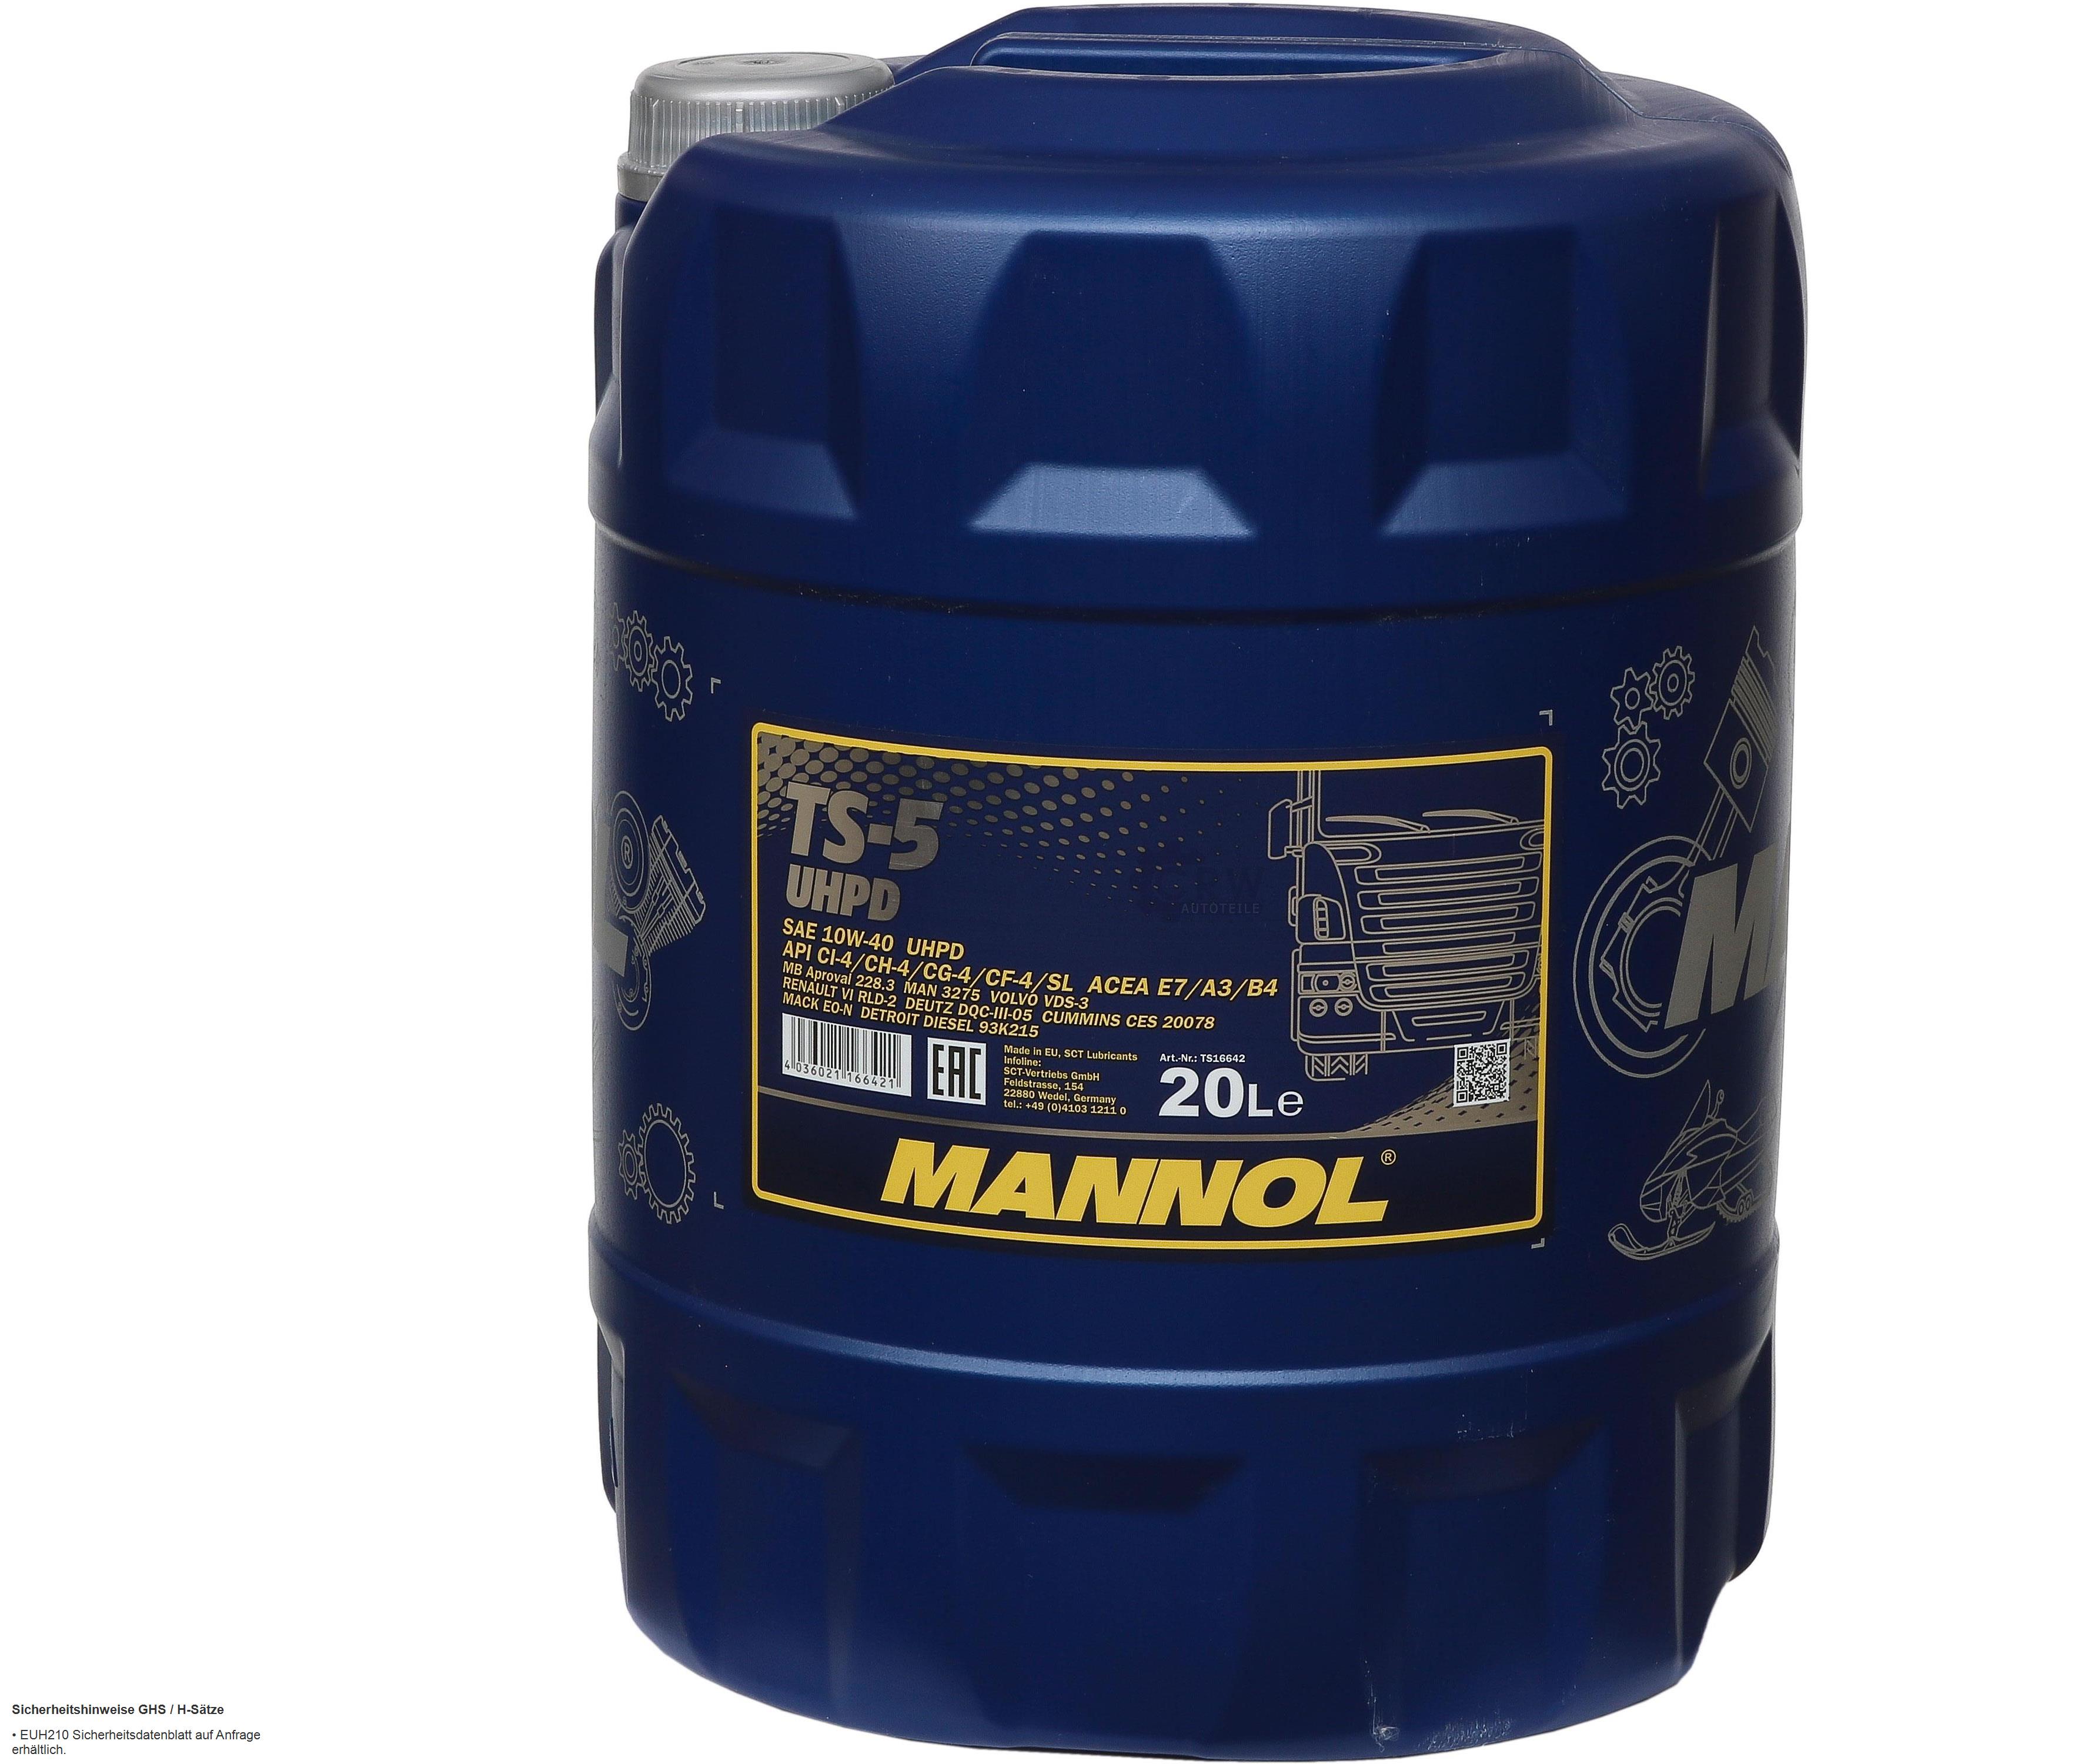 20 Liter Orignal MANNOL Motoröl TS-5 UHPD 10W-40 API Engine Oil Öl